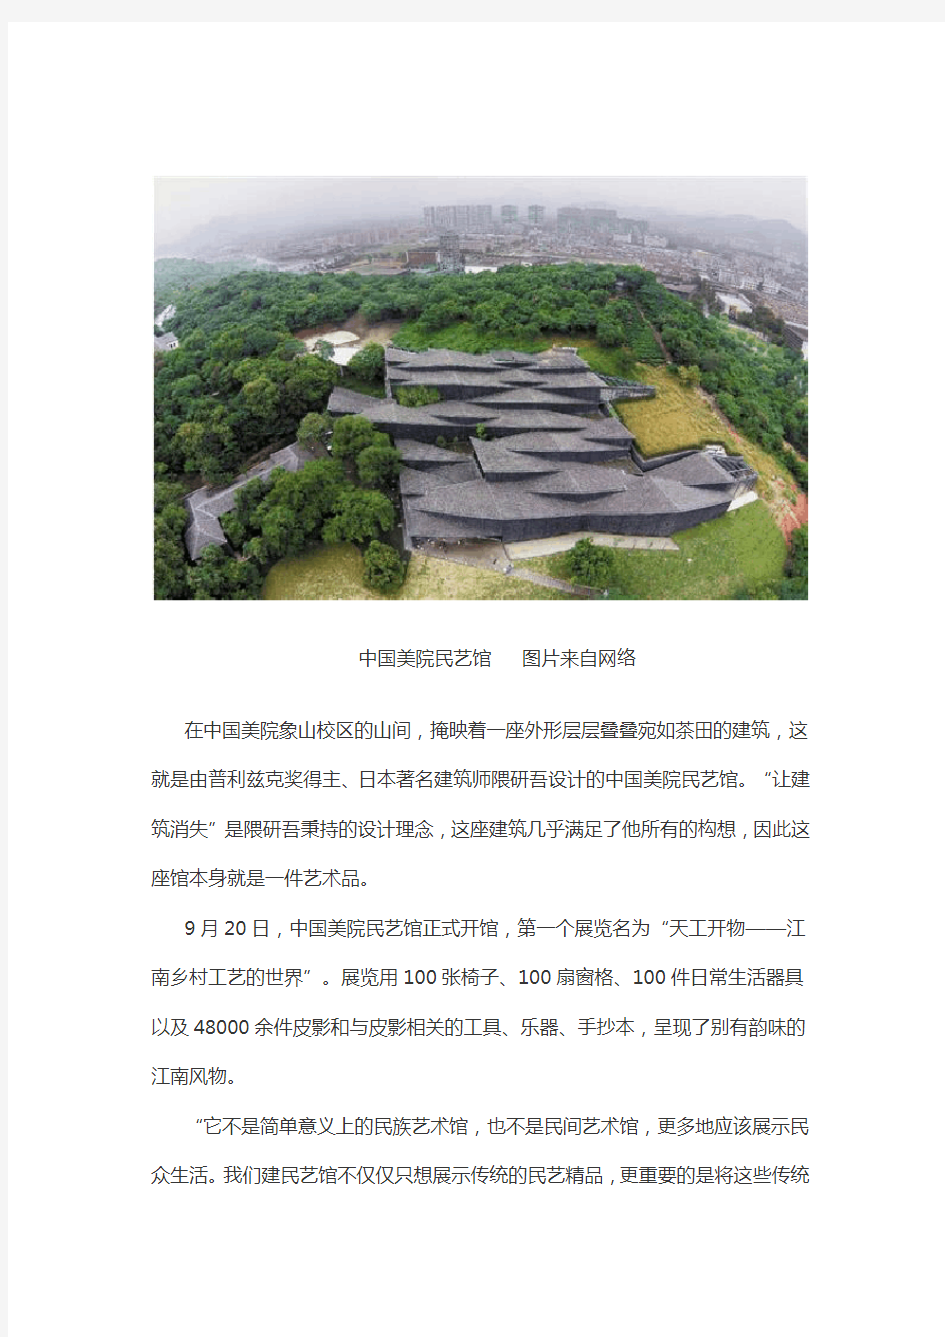 中国美术学院民俗艺术博物馆